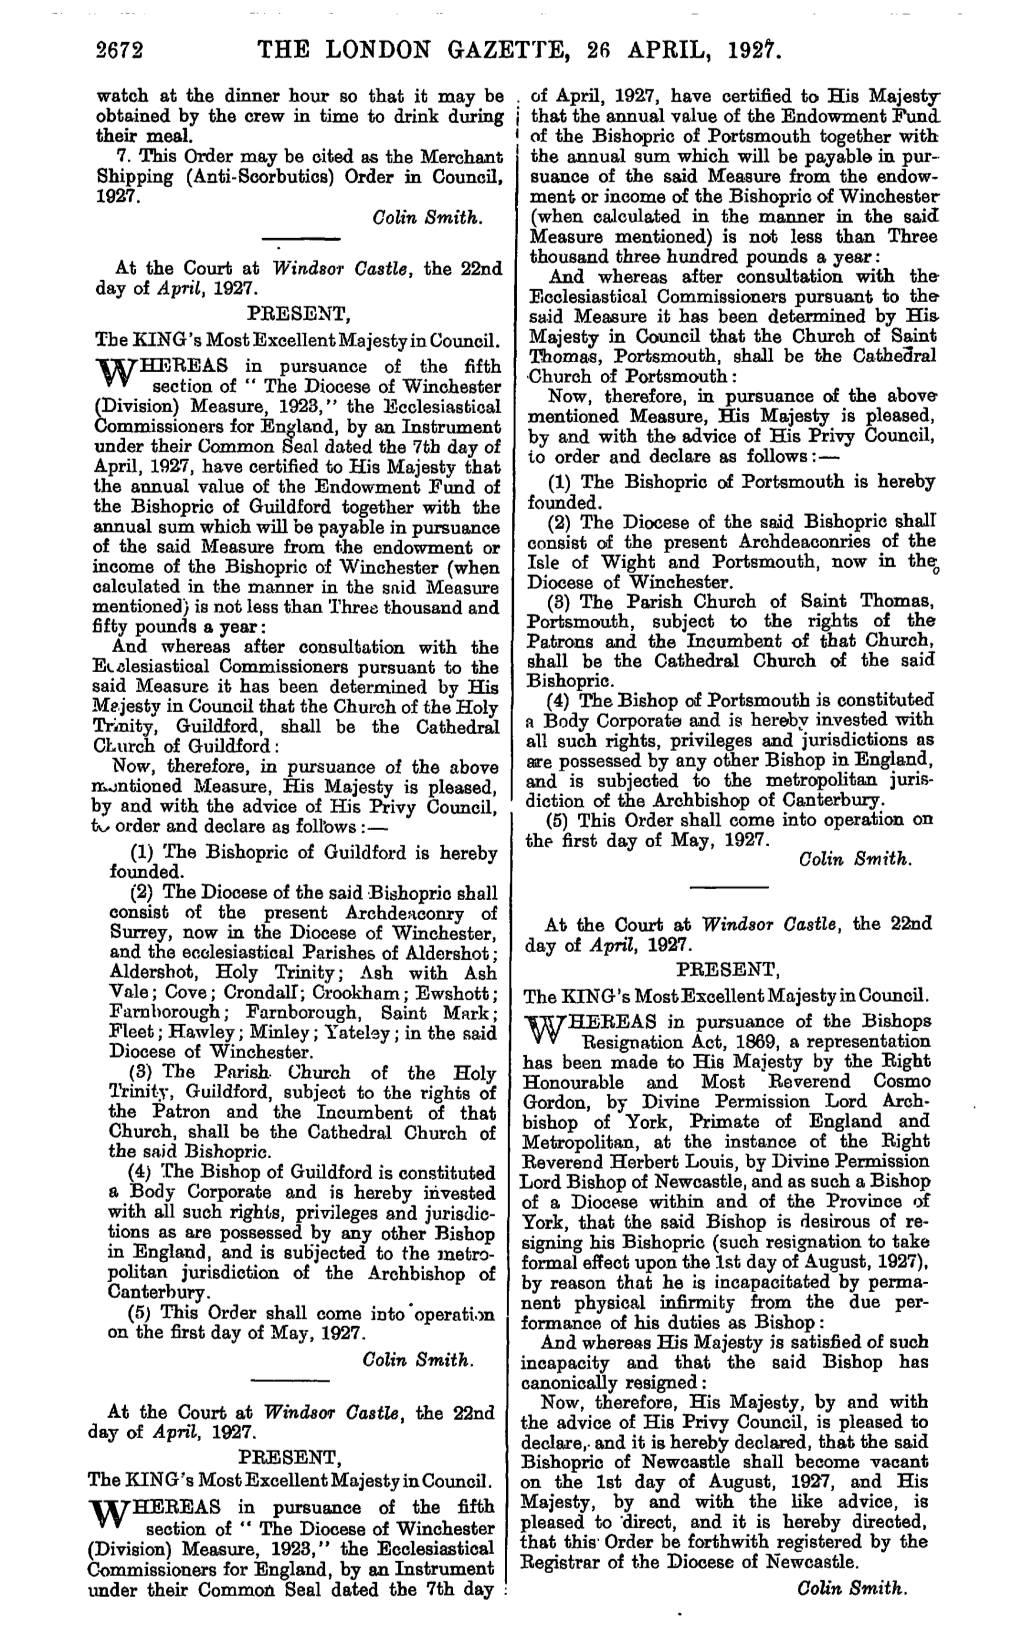 The London Gazette, 26 April, 1927